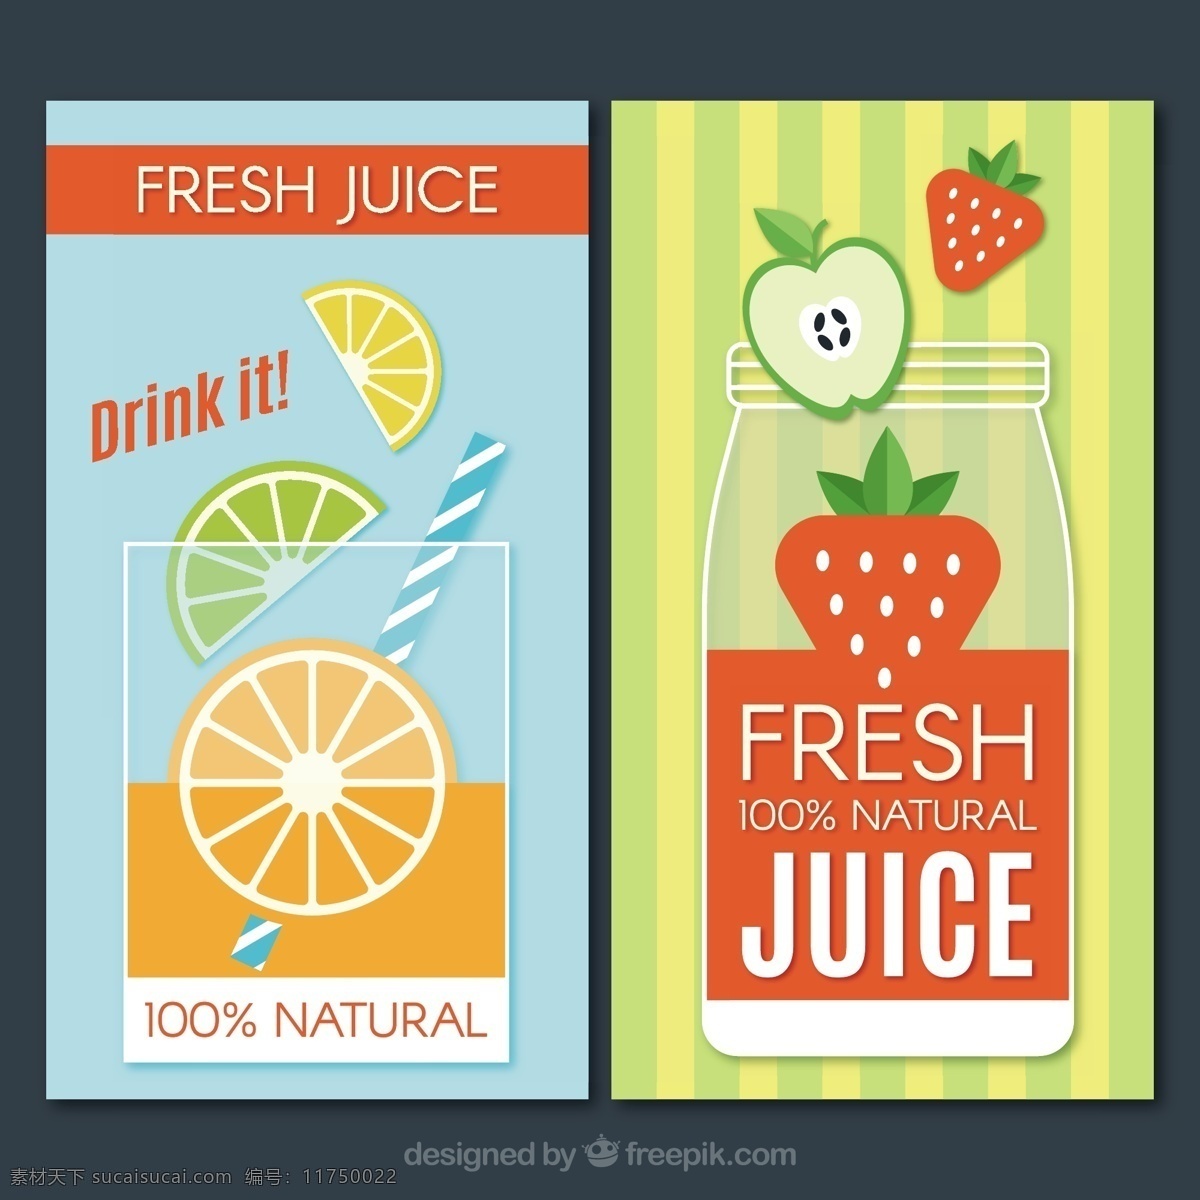 果汁 彩色 横幅 食品 夏季 水果 颜色 橙色 热带 苹果 瓶 平板 玻璃 饮料 自然 健康 平面设计 草莓